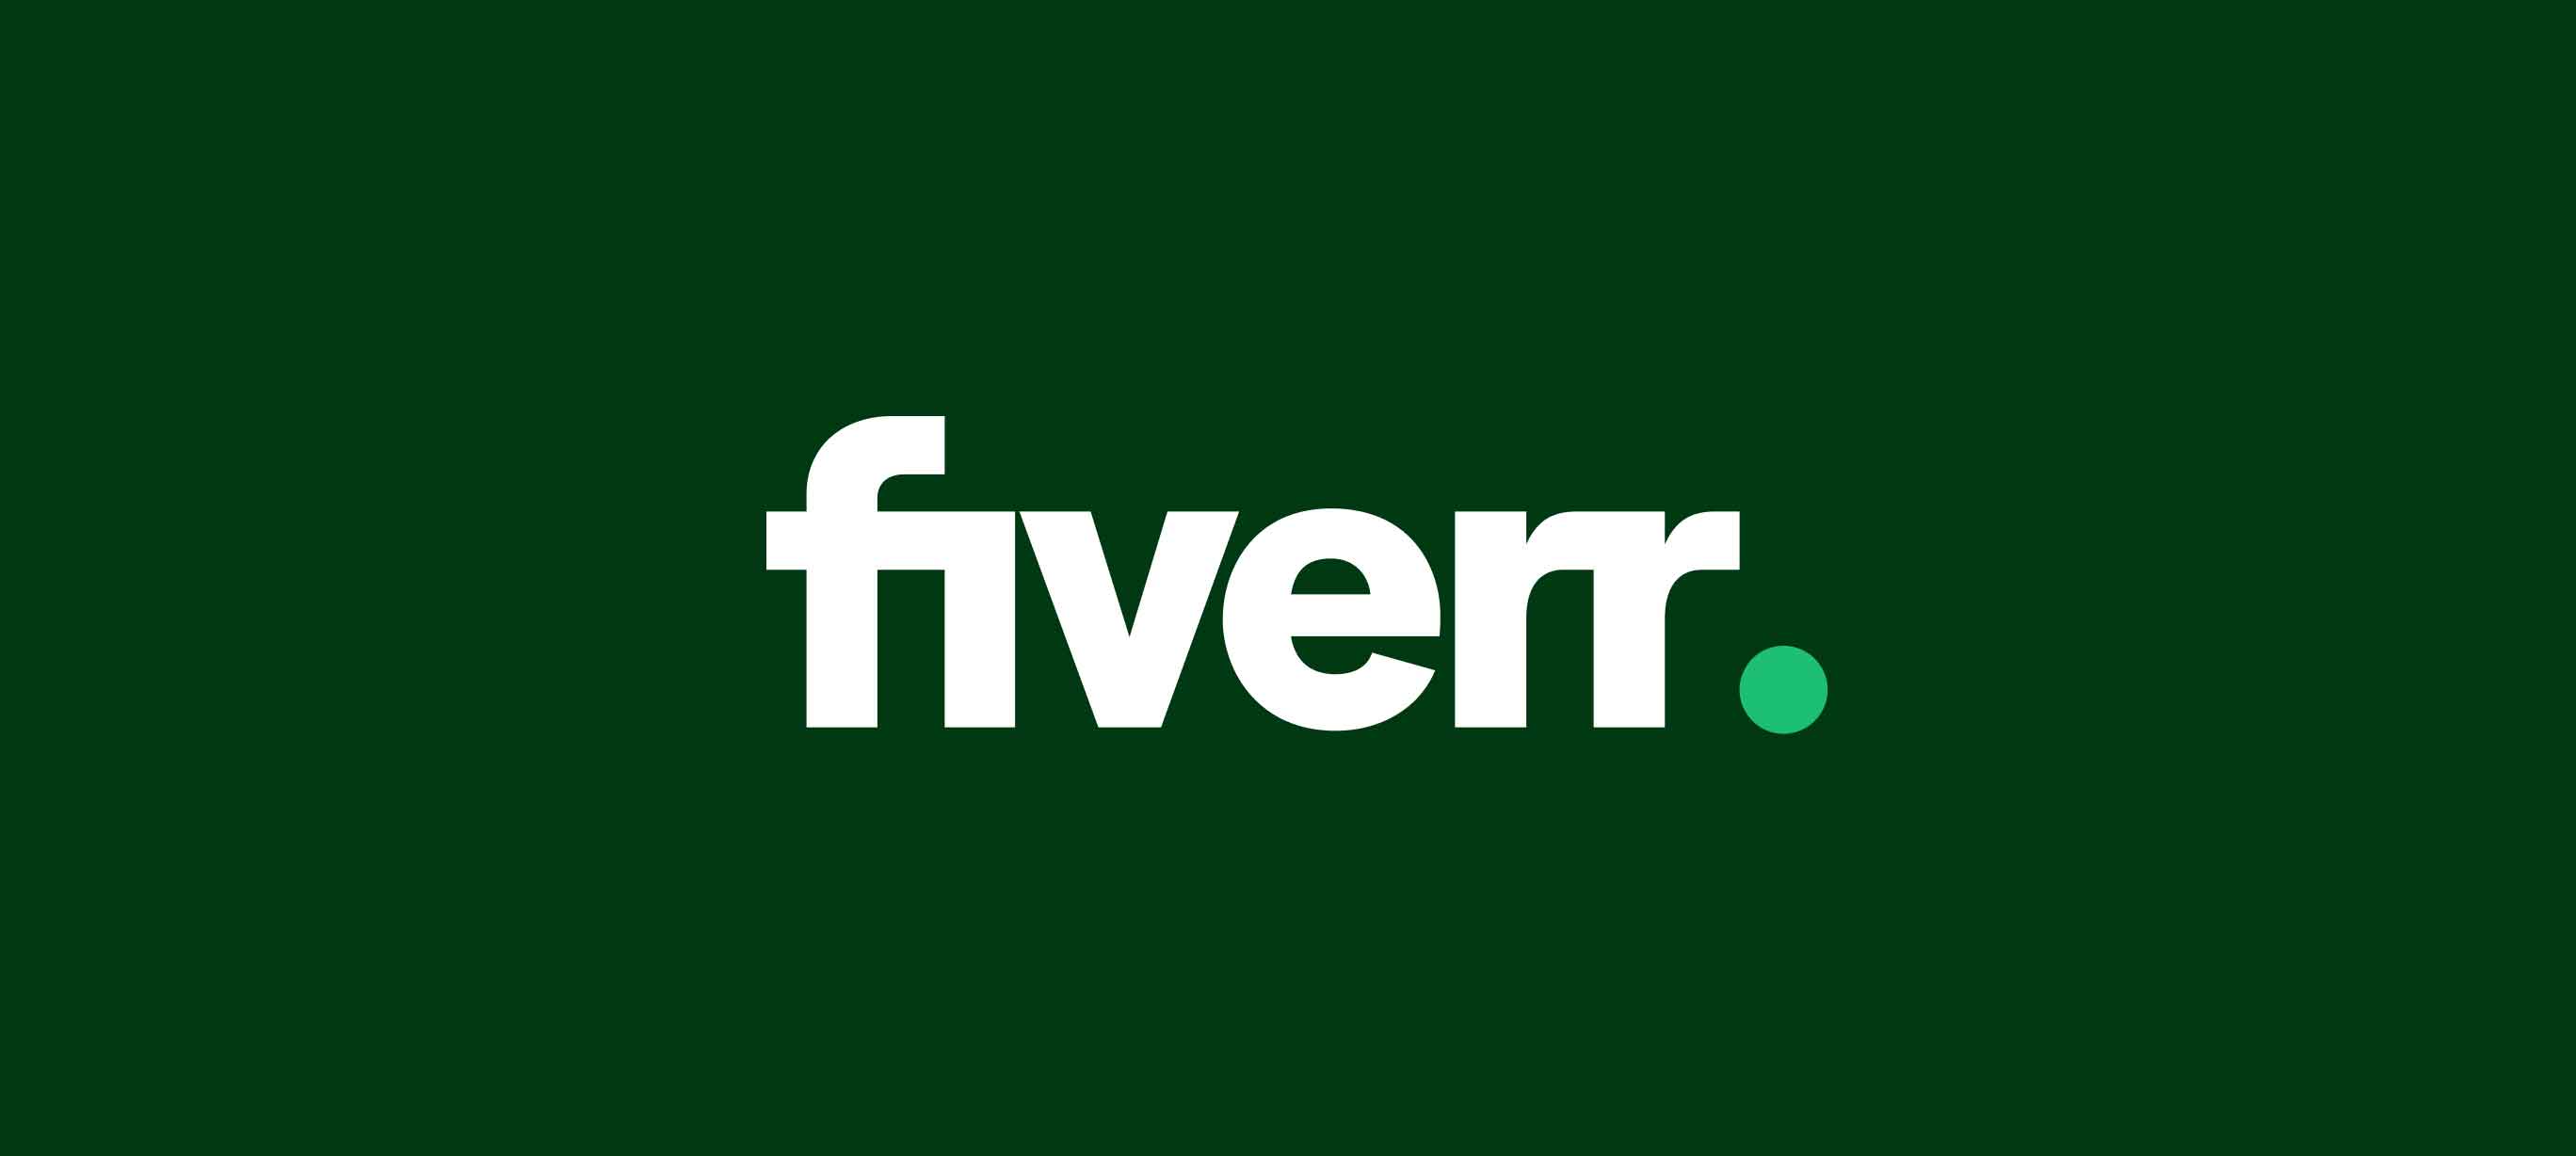 Fiverr for freelancers